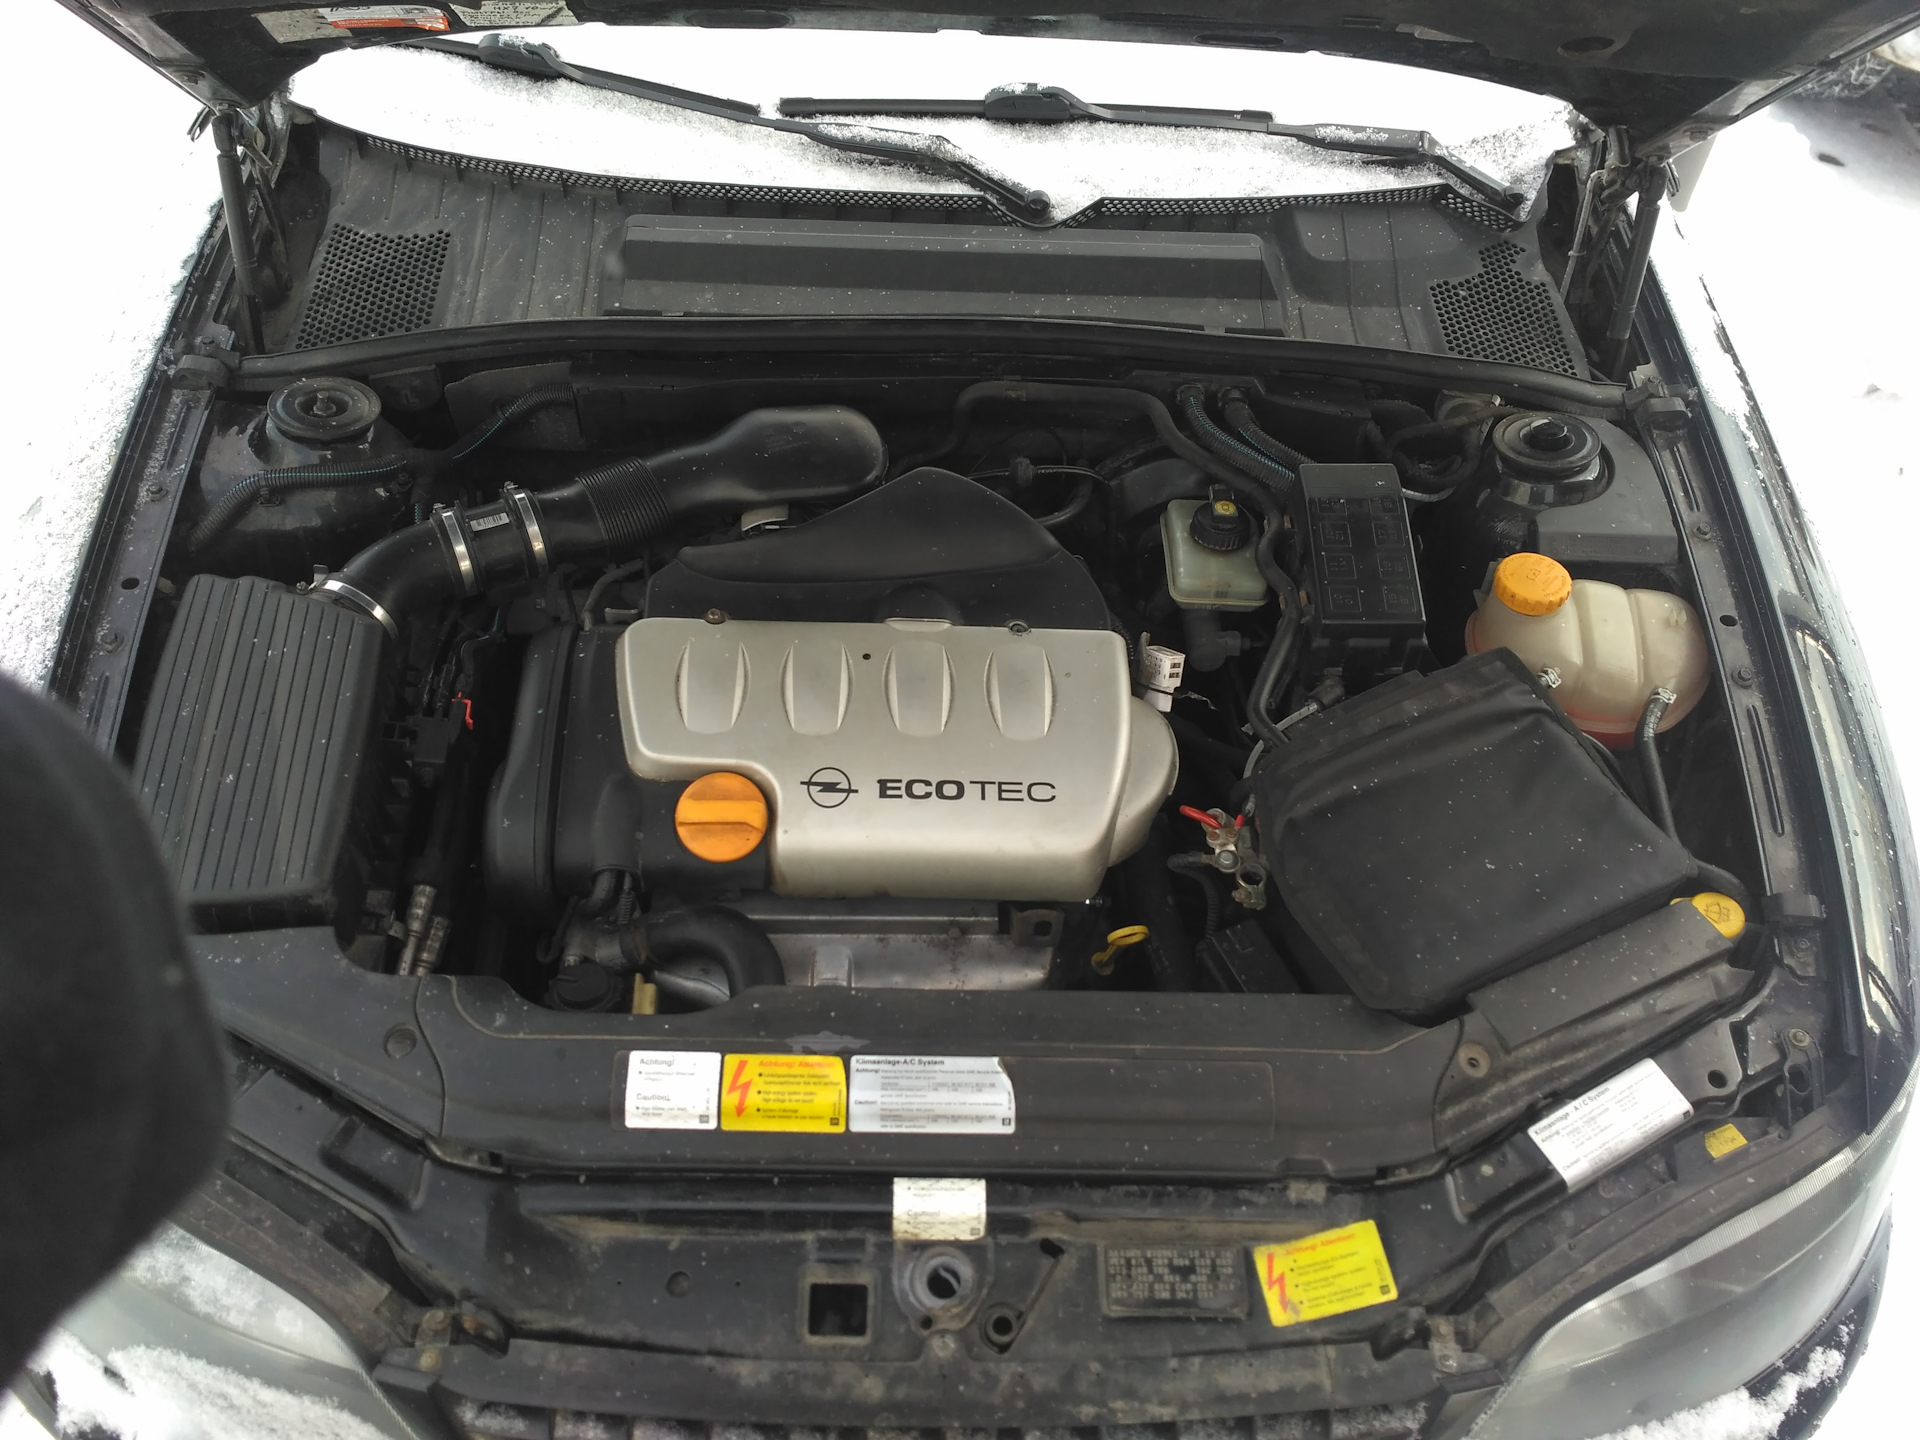 Вектра б 1.8 бензин. Opel Vectra b x18xe под капотом. Опель Вектра б 1.6 под капотом. Опель Вектра б 1.8 под капотом. Vectra b 2.0 DTL под капотом.